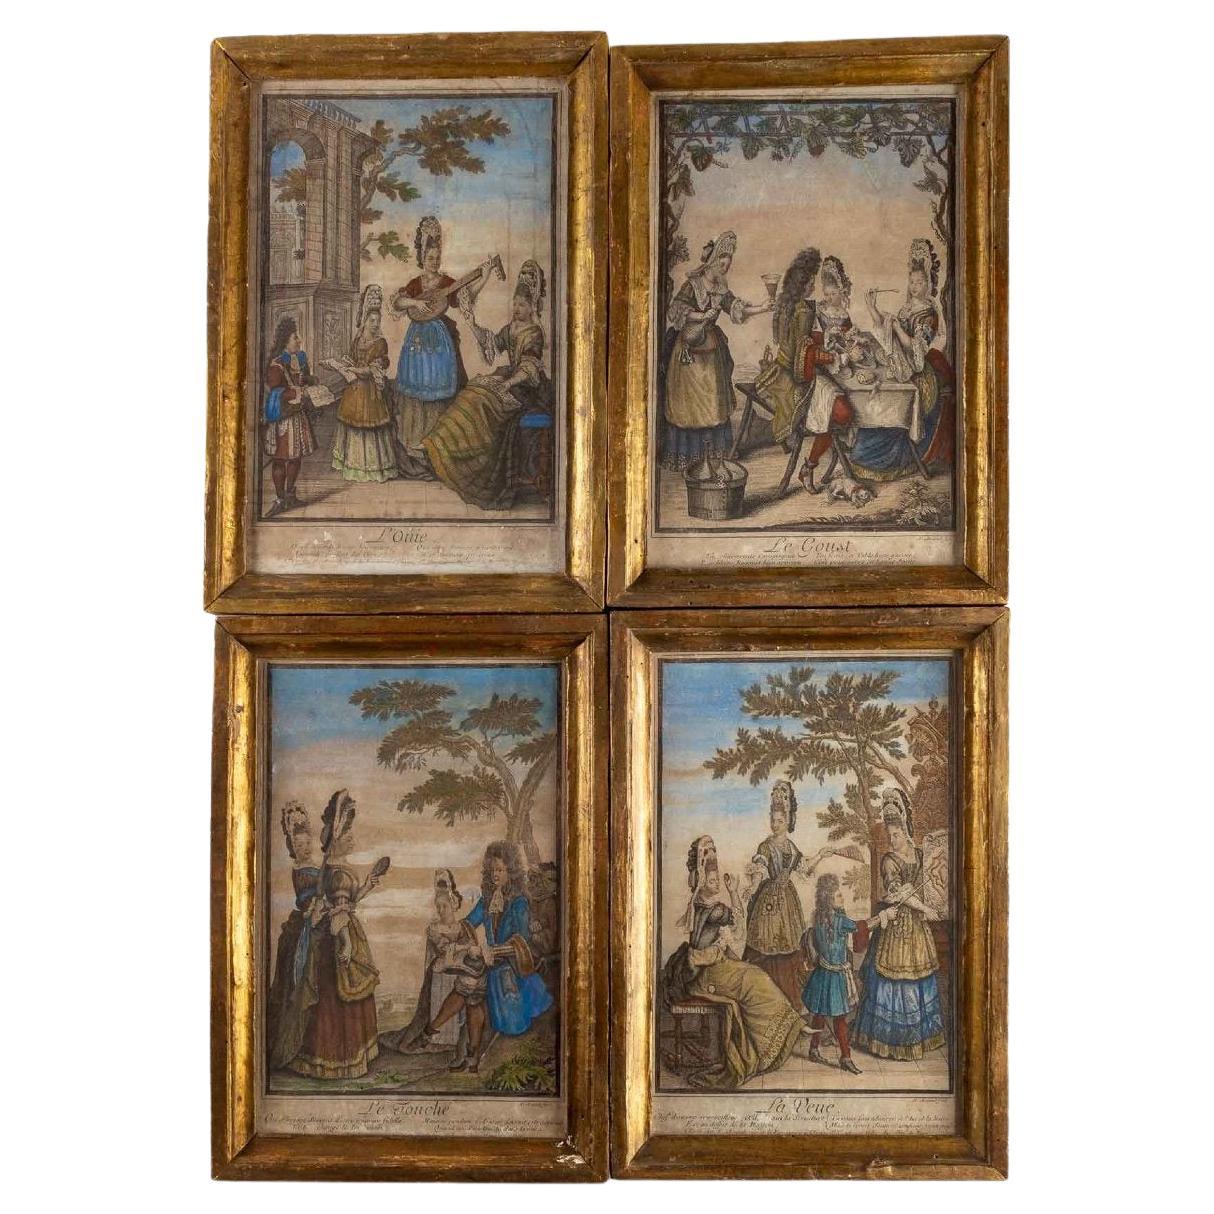 Four Allegorical Antique Prints, Nicolas Arnoult